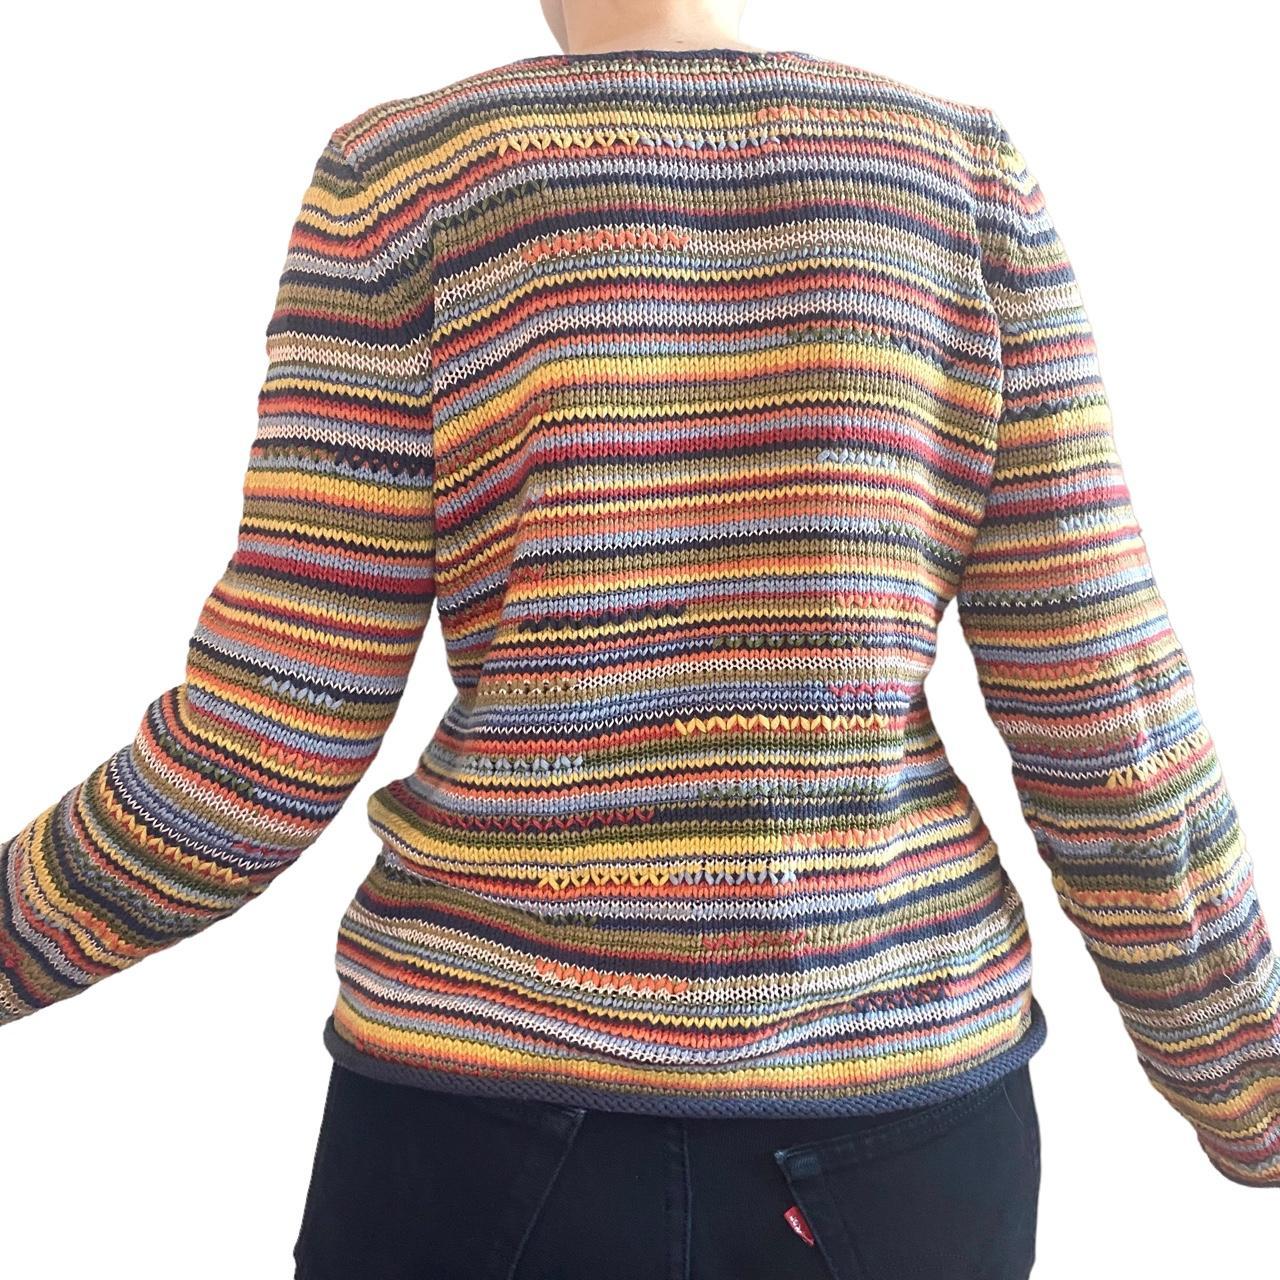 VINTAGE SIGRID OLSEN SWEATER - multicolored knitted... - Depop